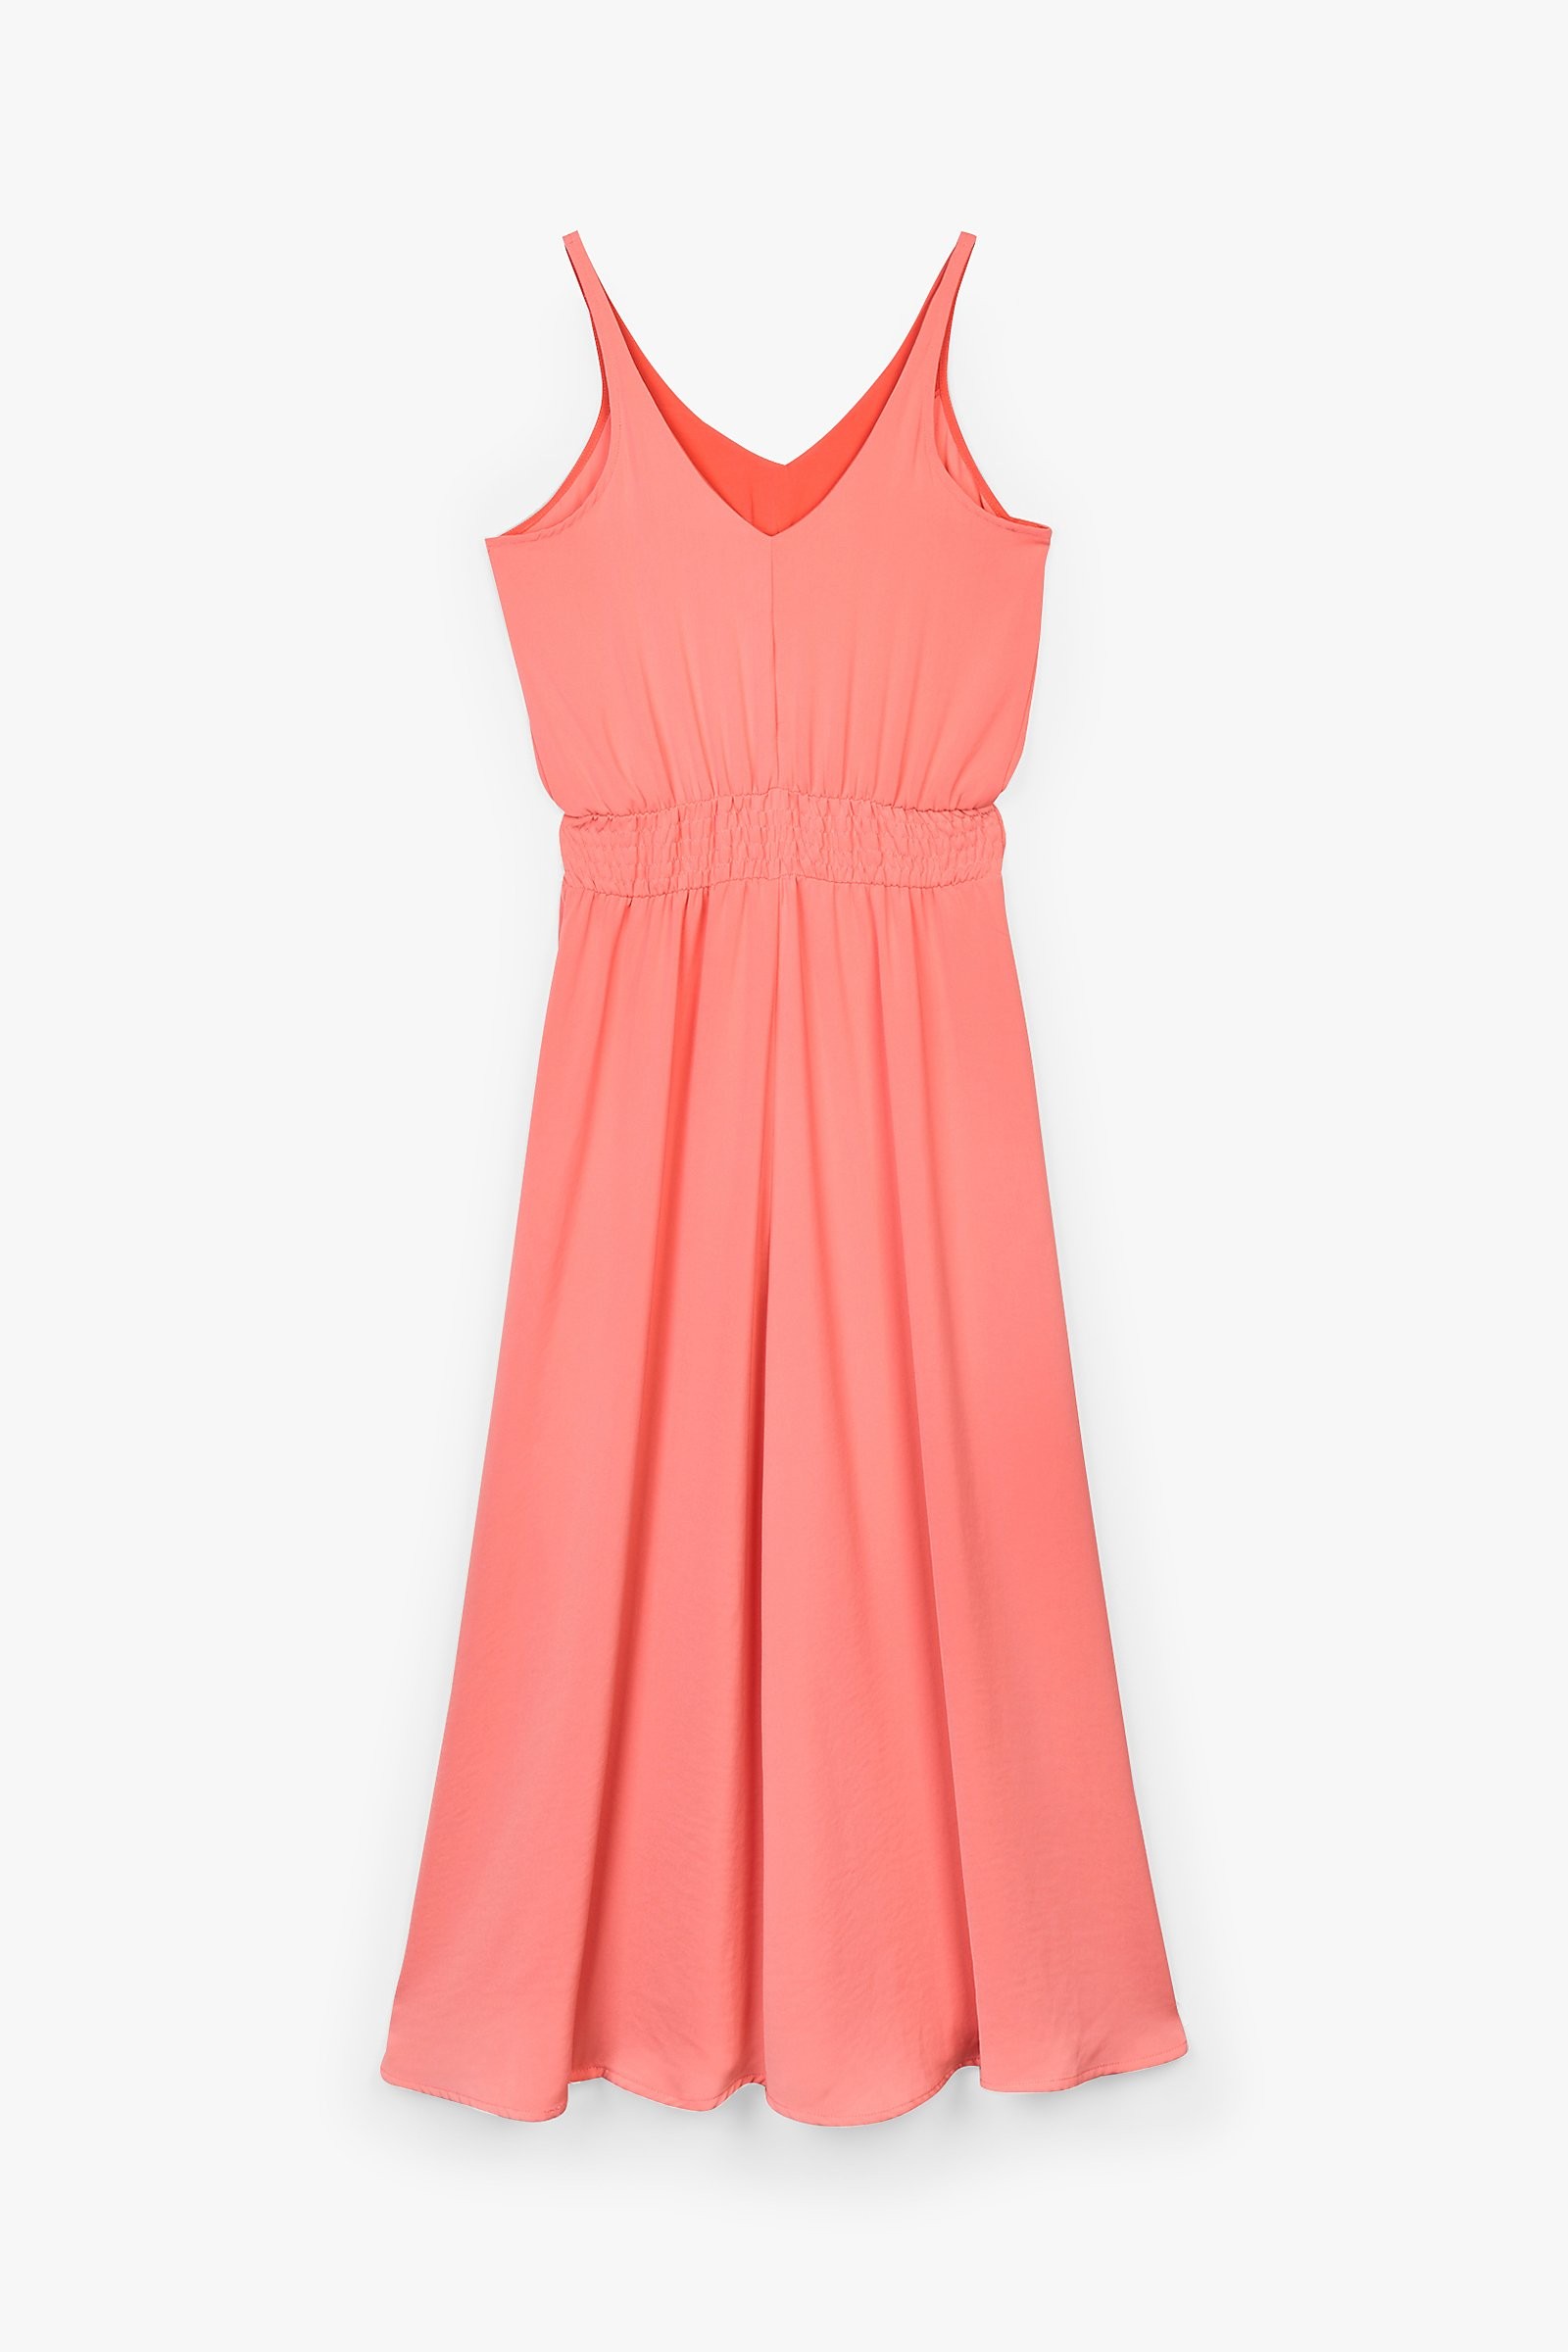 CKS Dames - PELINA - lange jurk - roze